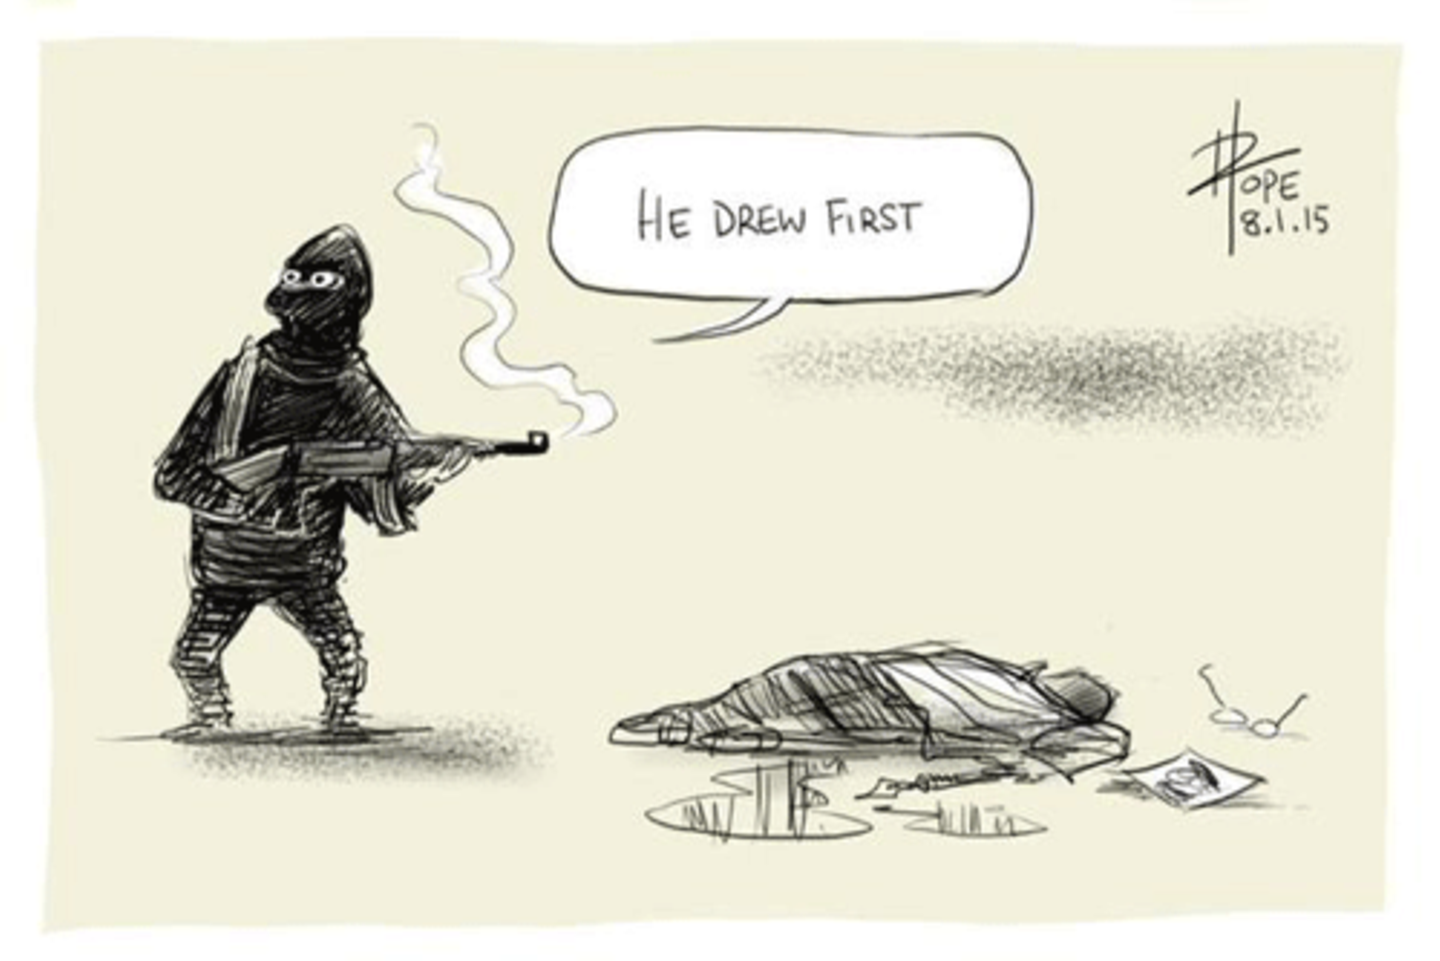 Der australische Comiczeichner David Pope schrieb zu seinem Bild, das er via Twitter teilte: "Ich kann nicht schlafen, meine Gedanken sind mit meinen französischen Kollegen und ihren Familien." In seinem Motiv spielt er mit der Doppeldeutigkeit des Verbs "to draw", das nicht nur "zeichnen" bedeutet. "to draw the gun" heißt auf Deutsch "die Waffe ziehen".